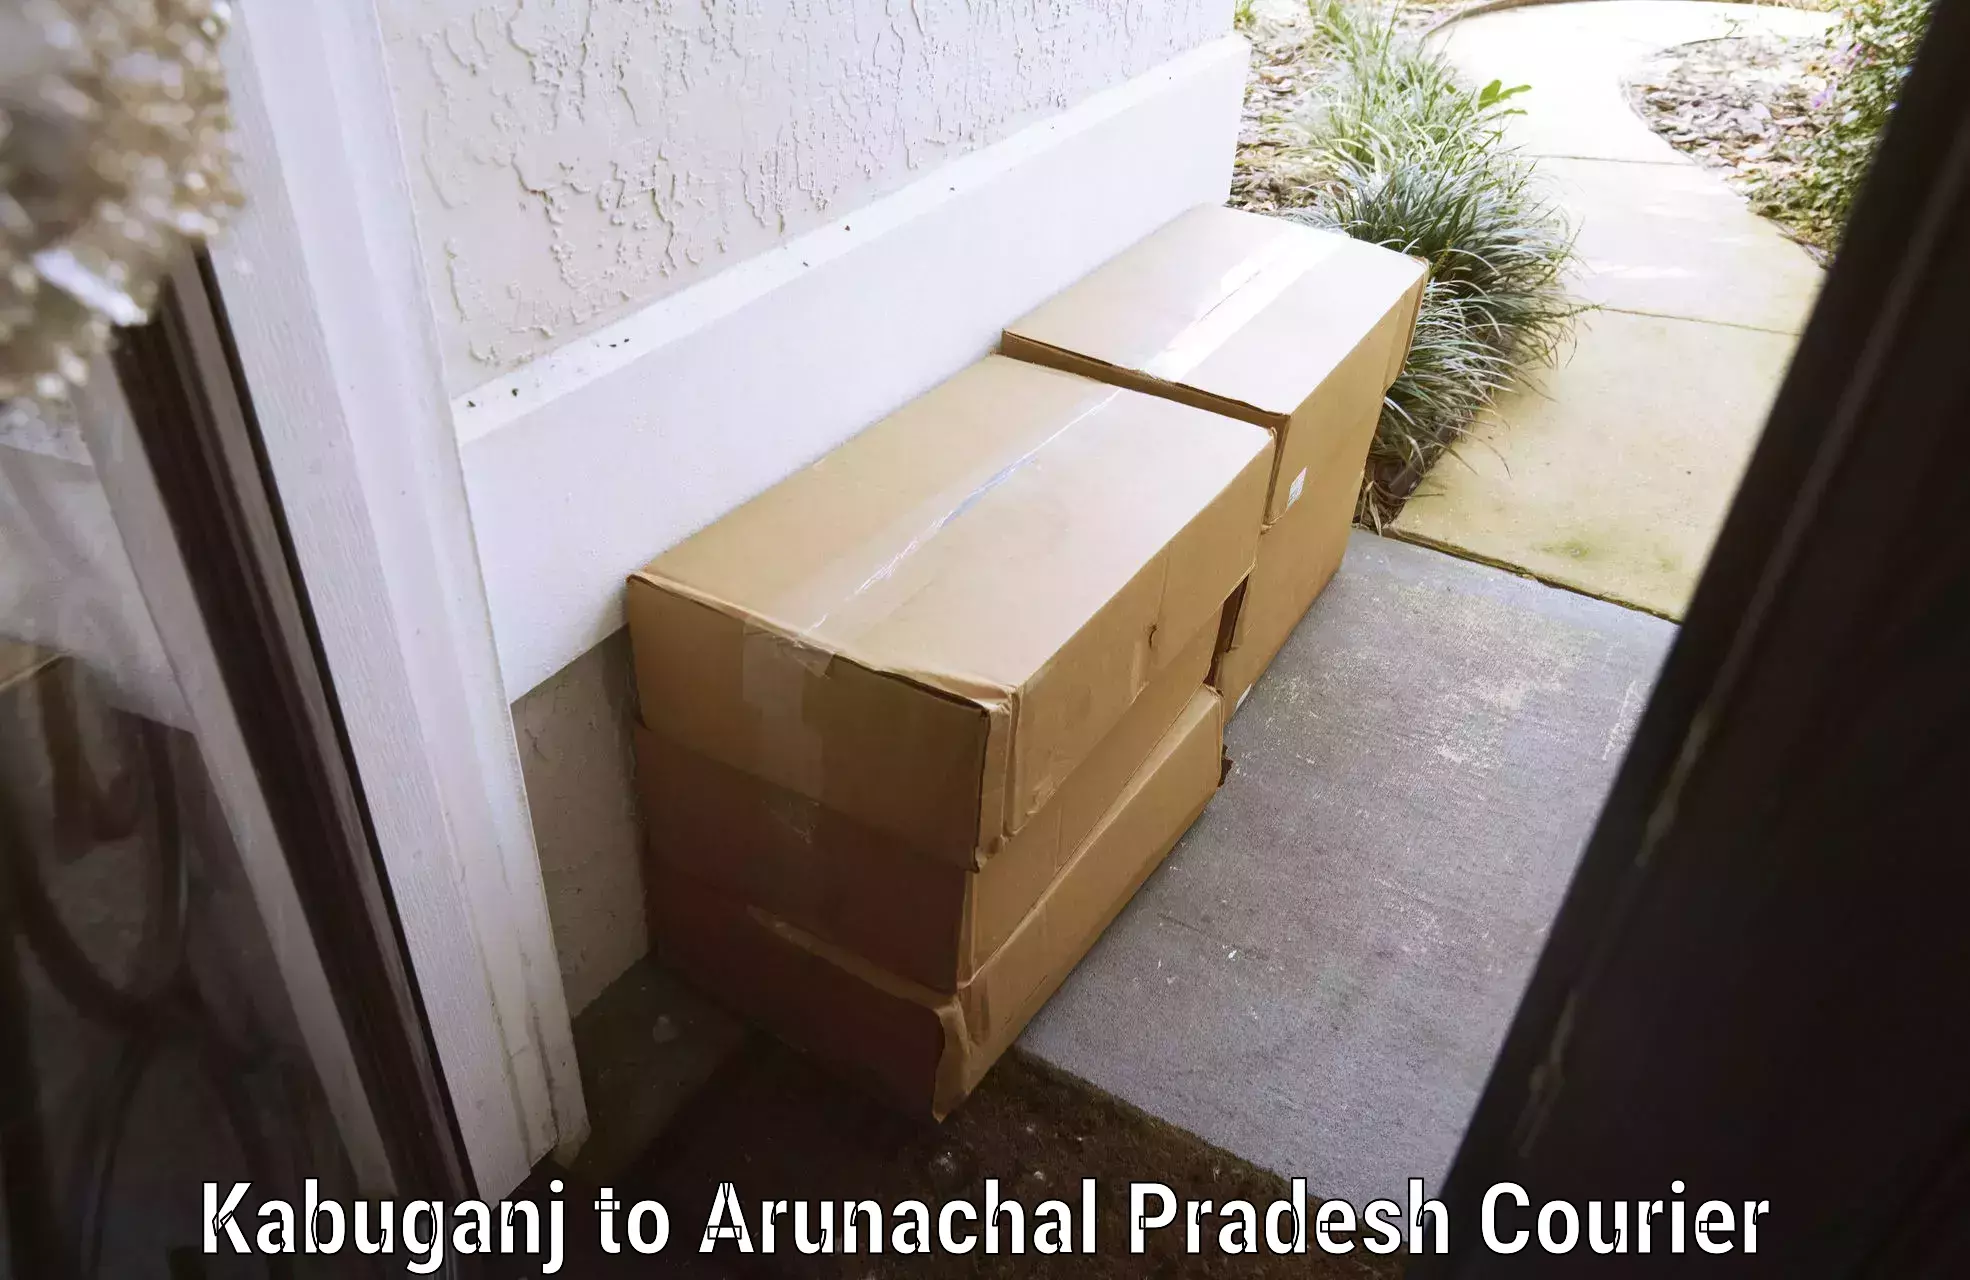 Baggage relocation service Kabuganj to Arunachal Pradesh